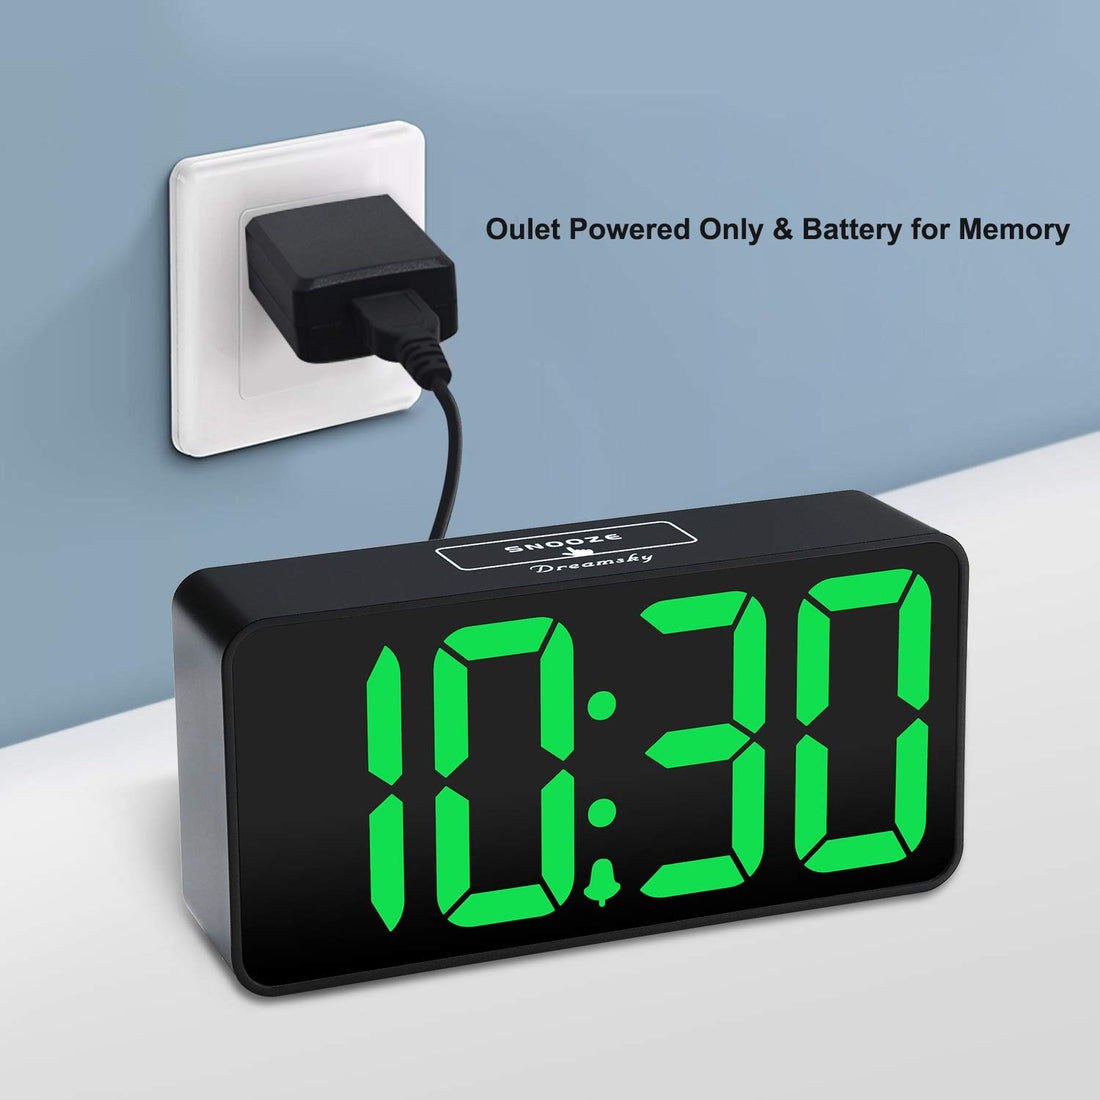 DreamSky Compact Digital Alarm Clock with USB Port for Charging, Adjustable Brightness Dimmer, Green Bold Digit Display, 12/24Hr, Snooze, Adjustable Alarm Volume, Small Desk Bedroom Bedside Clocks